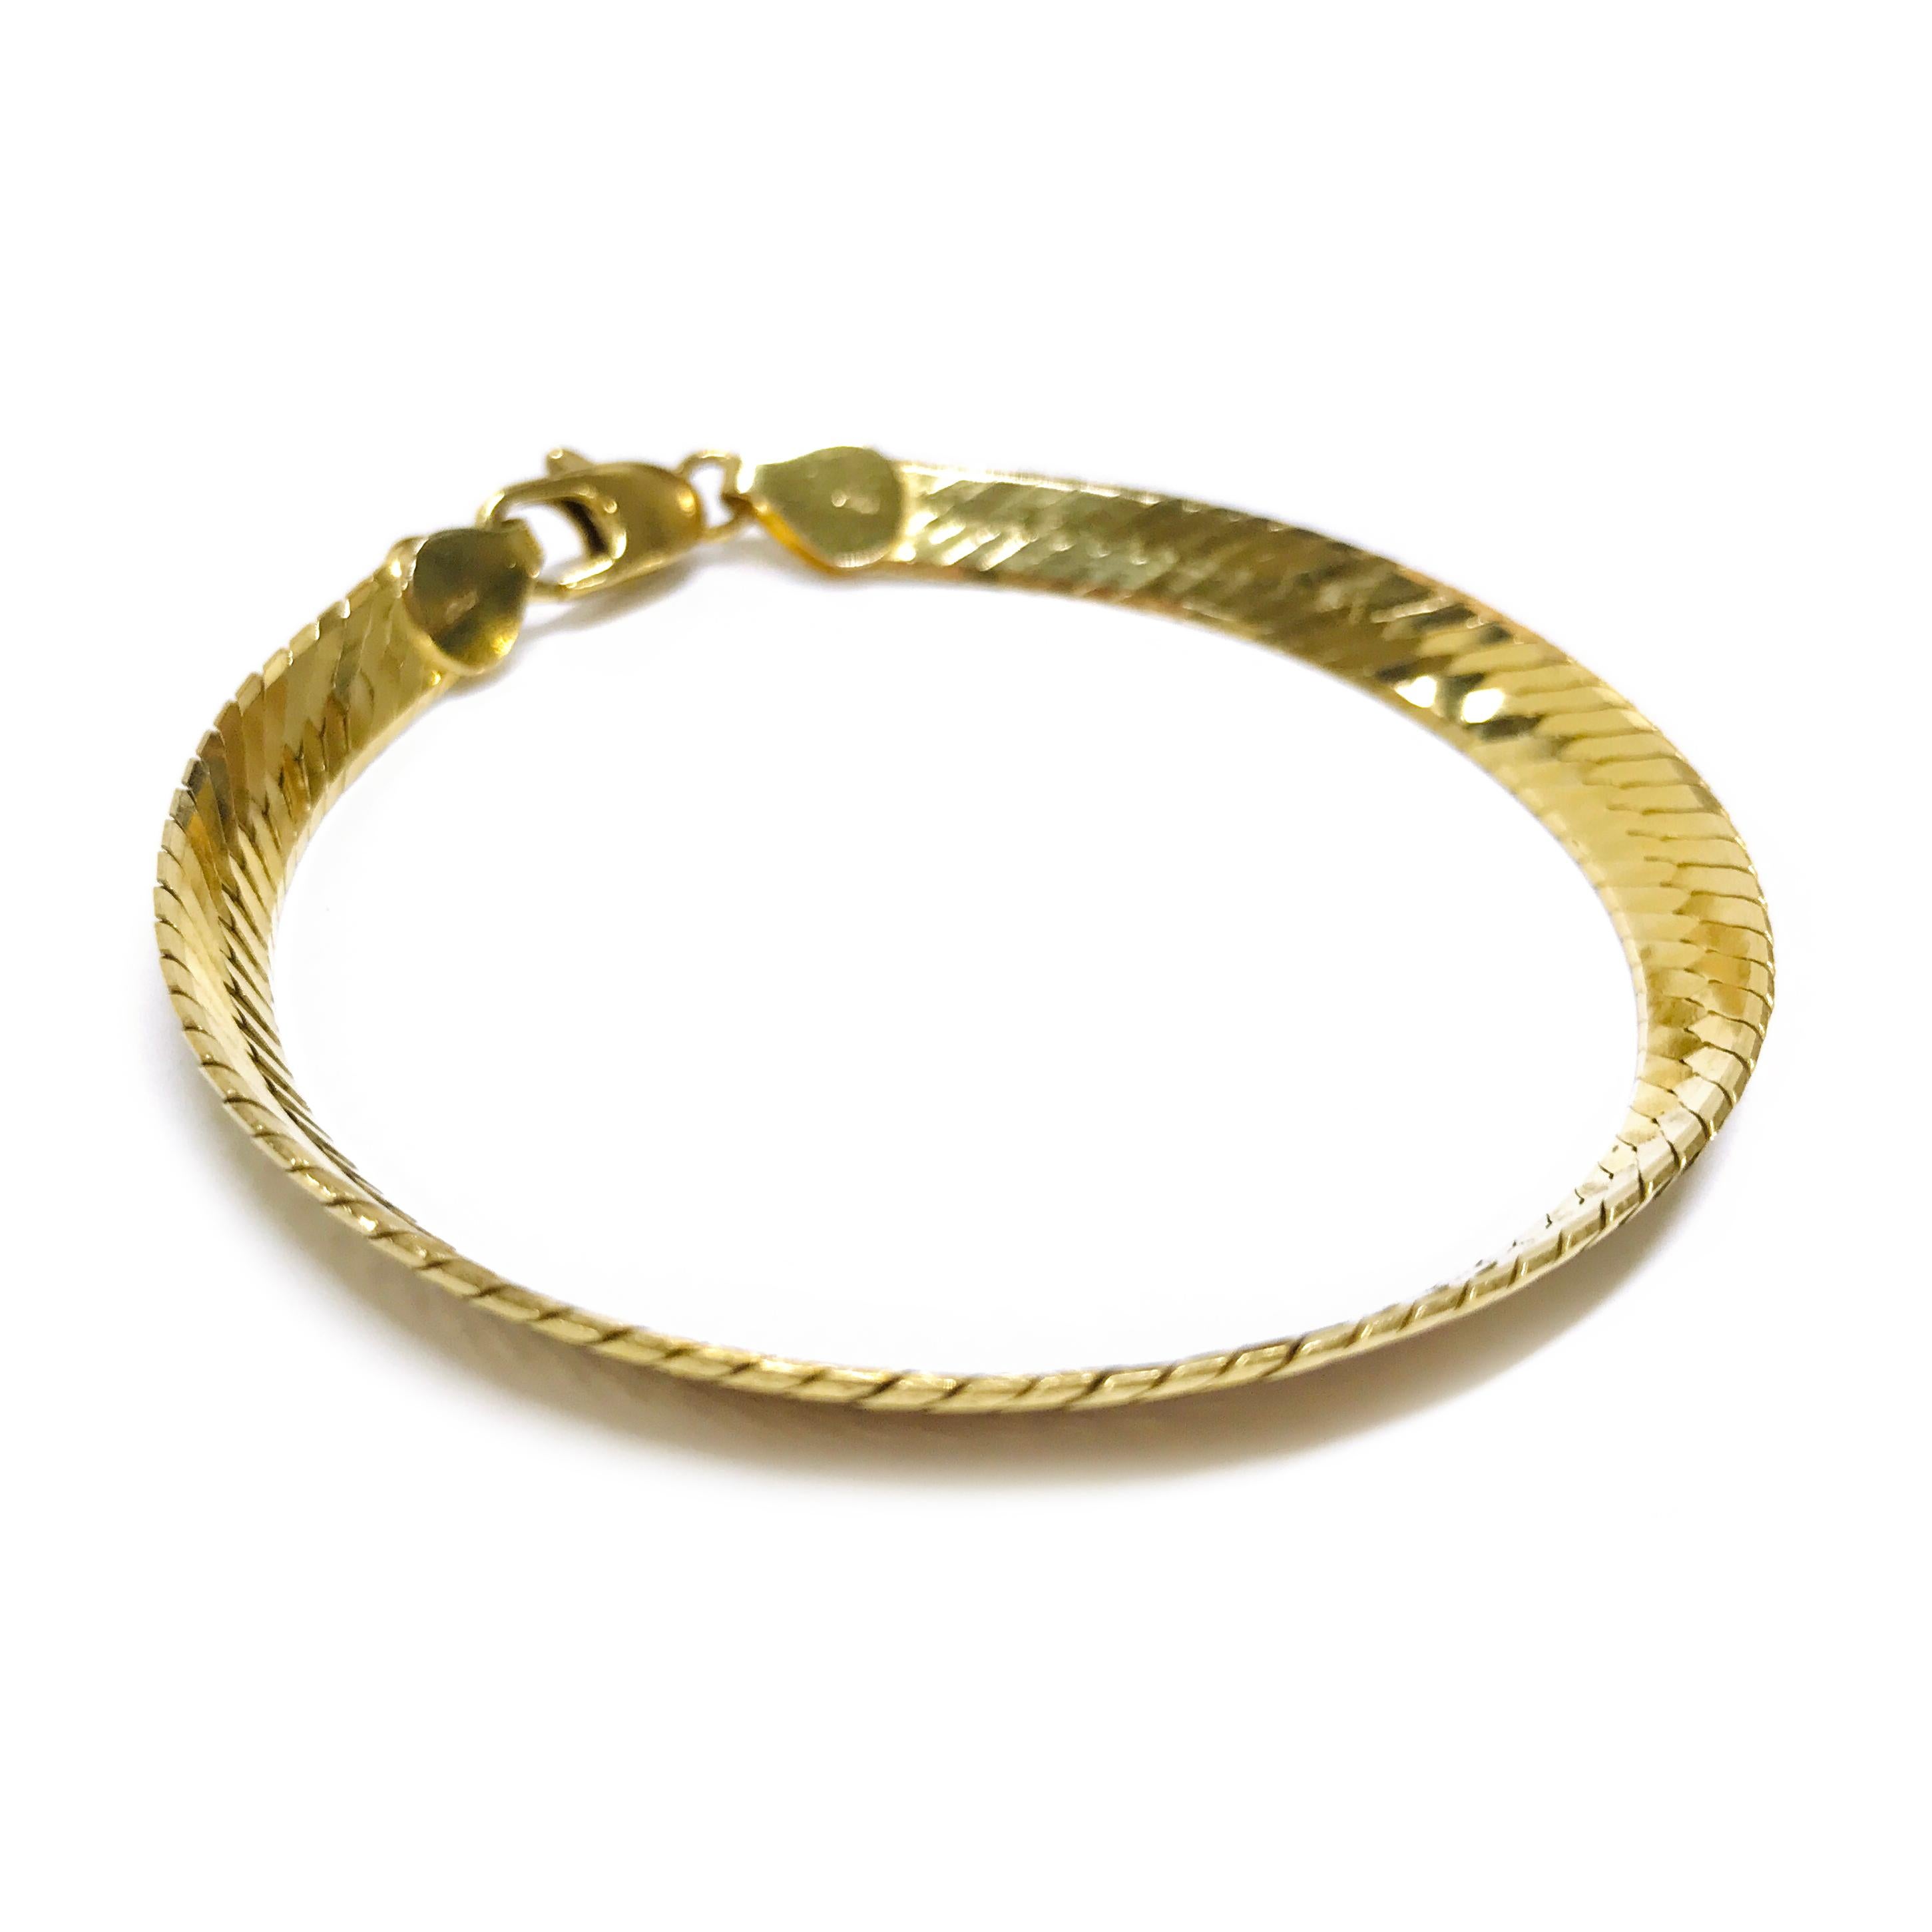 bracelet en or jaune 14 carats à chevrons. Le bracelet a une largeur de 6,5 mm. Les tampons 14K et ITALY sont apposés aux deux extrémités du bracelet. Le bracelet mesure 7 1/2